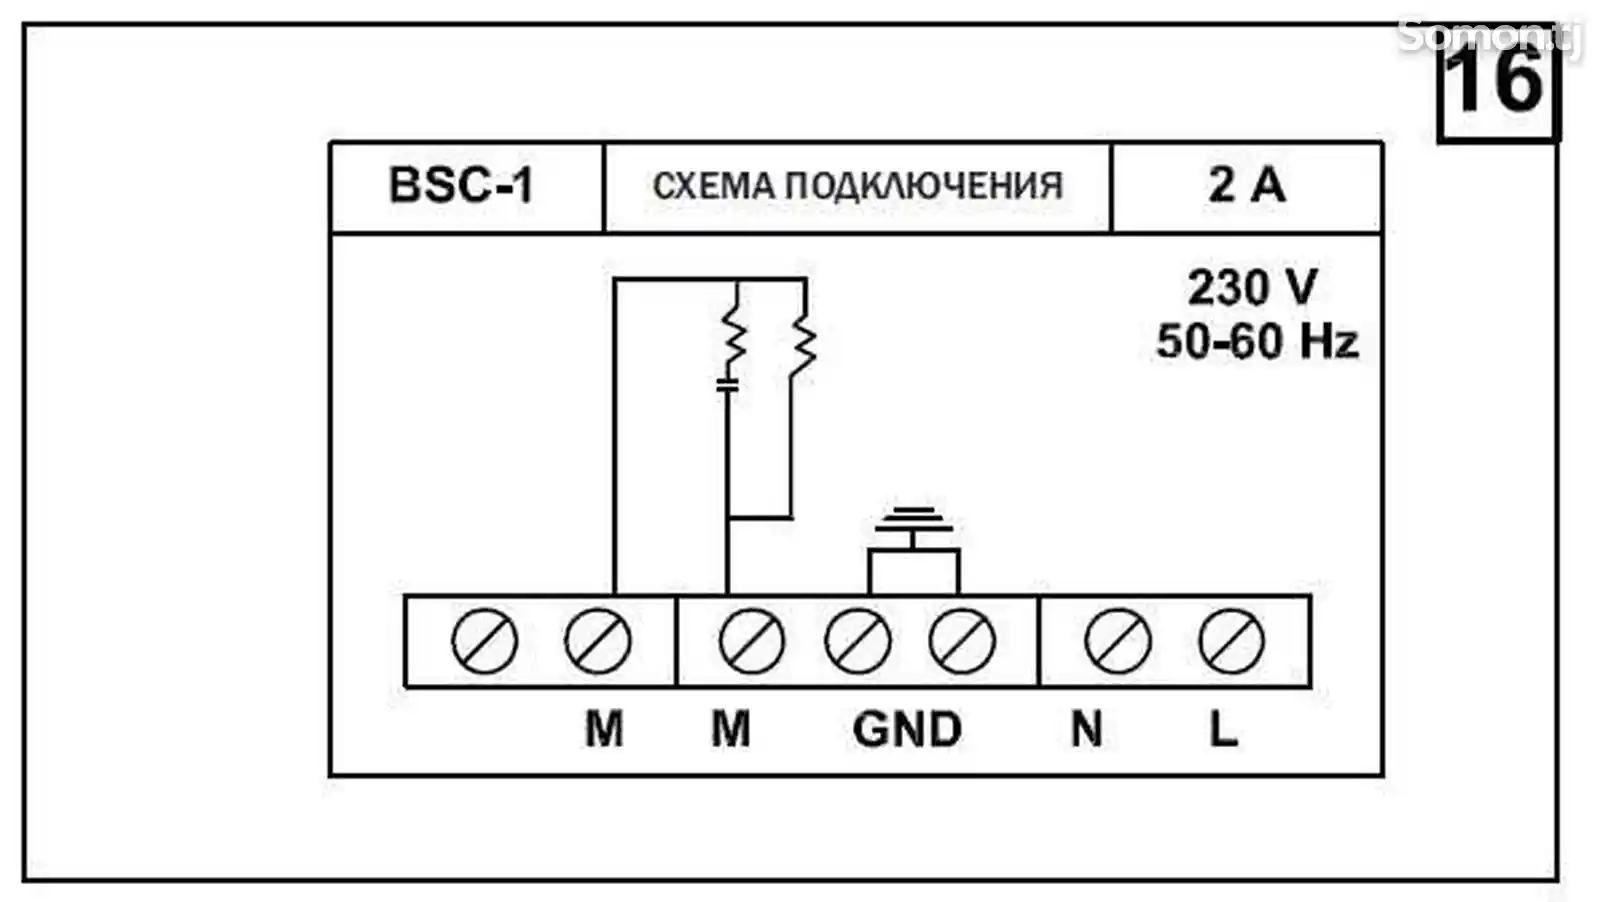 Регулятор скорости BSC-1 для вентилятора-7